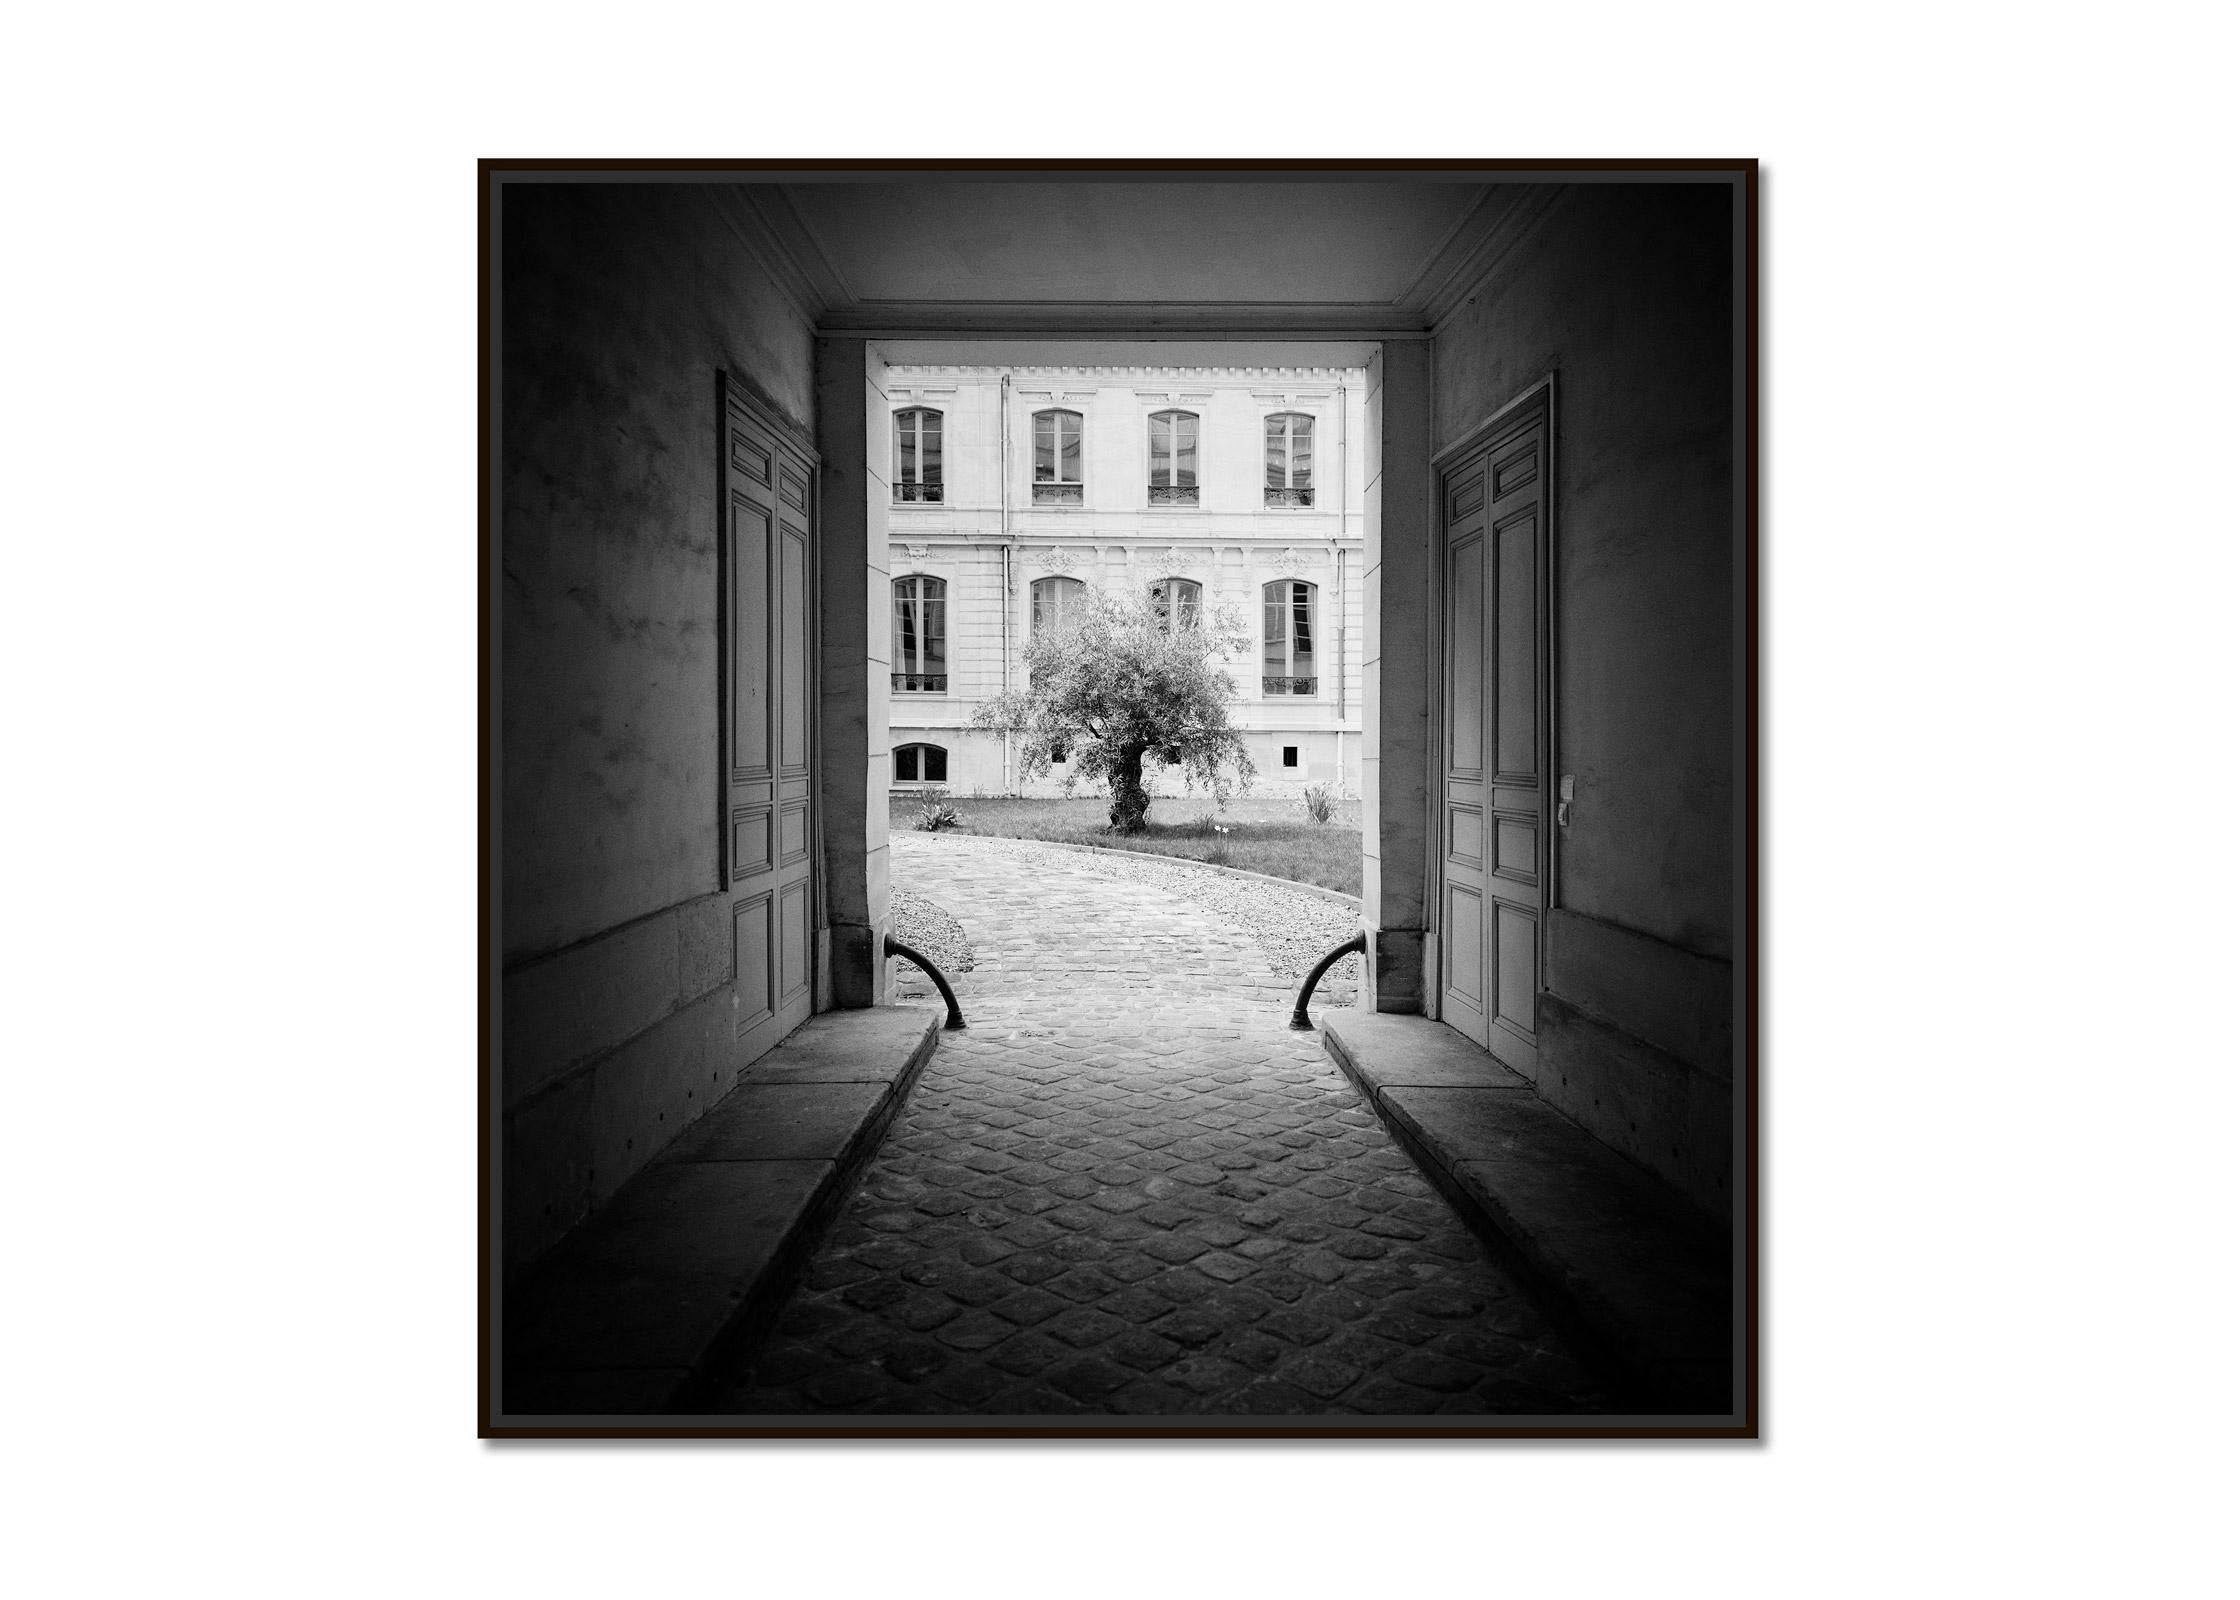 Baum in the Courtyard Paris Schwarz-Weiß-Fotografie der bildenden Kunst – Photograph von Gerald Berghammer, Ina Forstinger